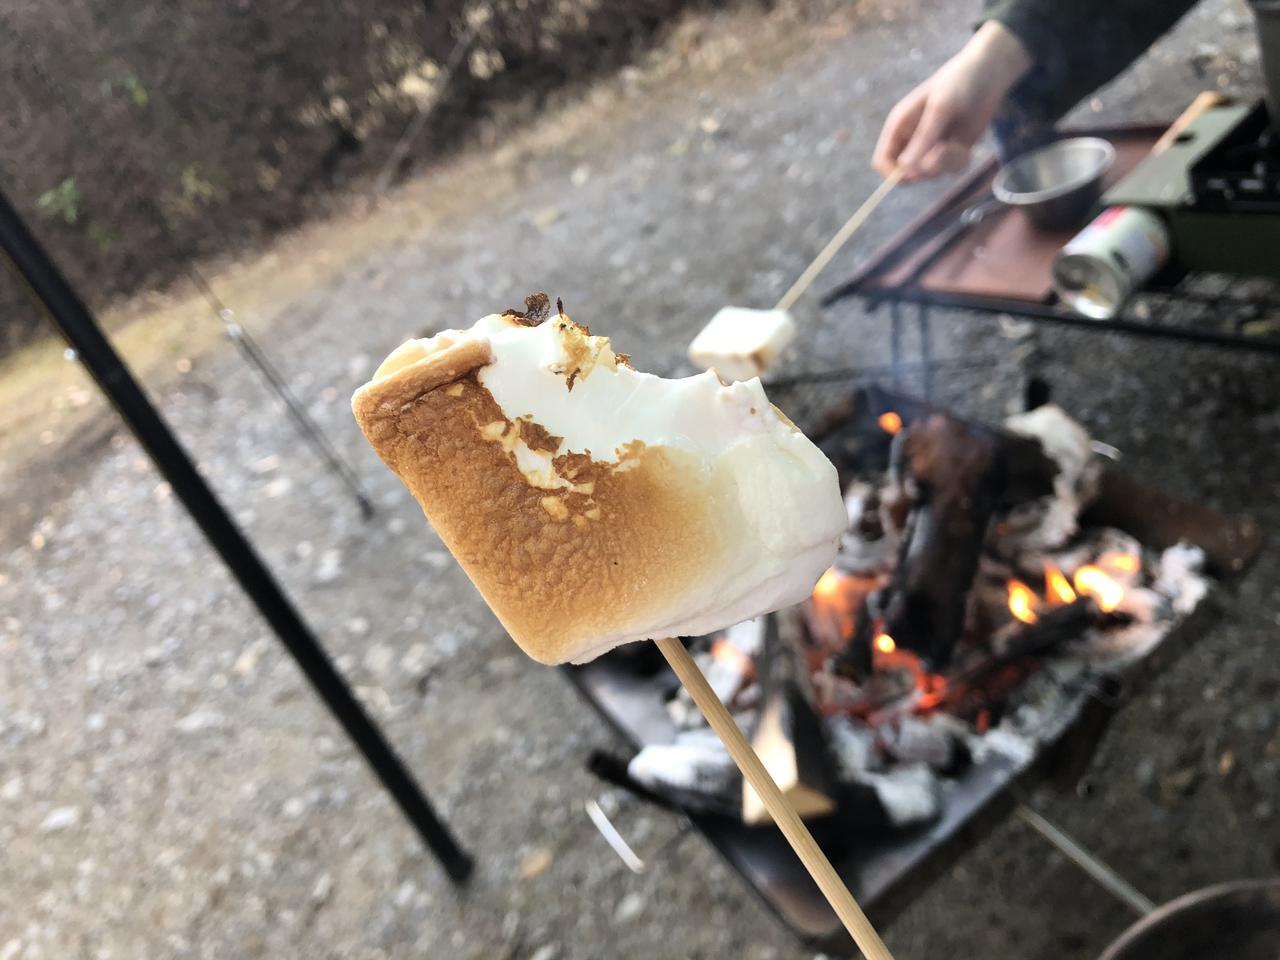 キャンプで盛り上がる 超大きい メガマシュマロ を焚き火でおいしく焼くコツを伝授 お役立ちキャンプ情報 21年05月24日 日本気象協会 Tenki Jp